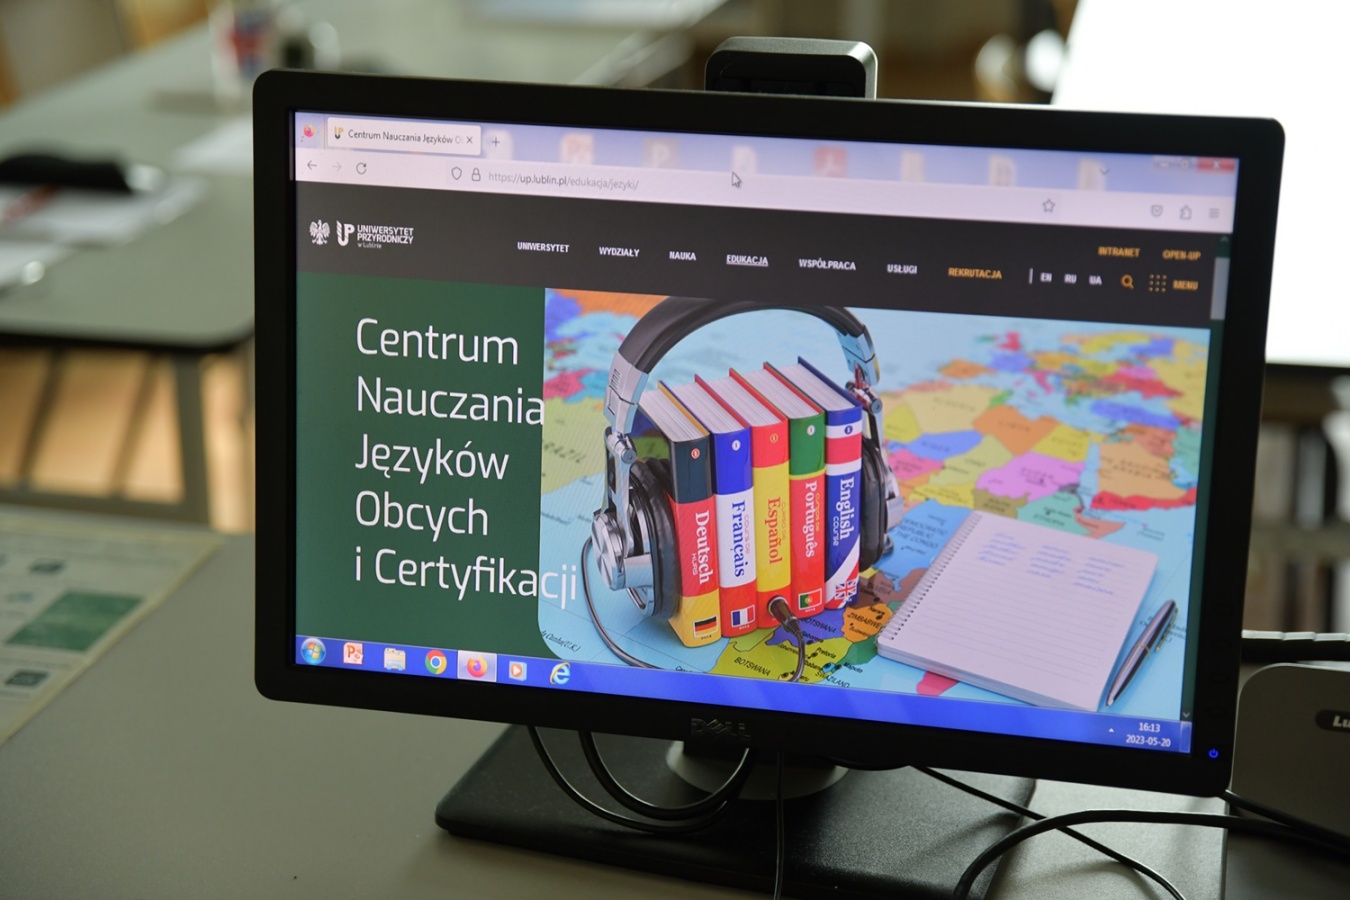 ekran komputera ze stroną uniwersytetu przyrodniczego poświęconą centrum nauczania języków obcych i certyfikacji